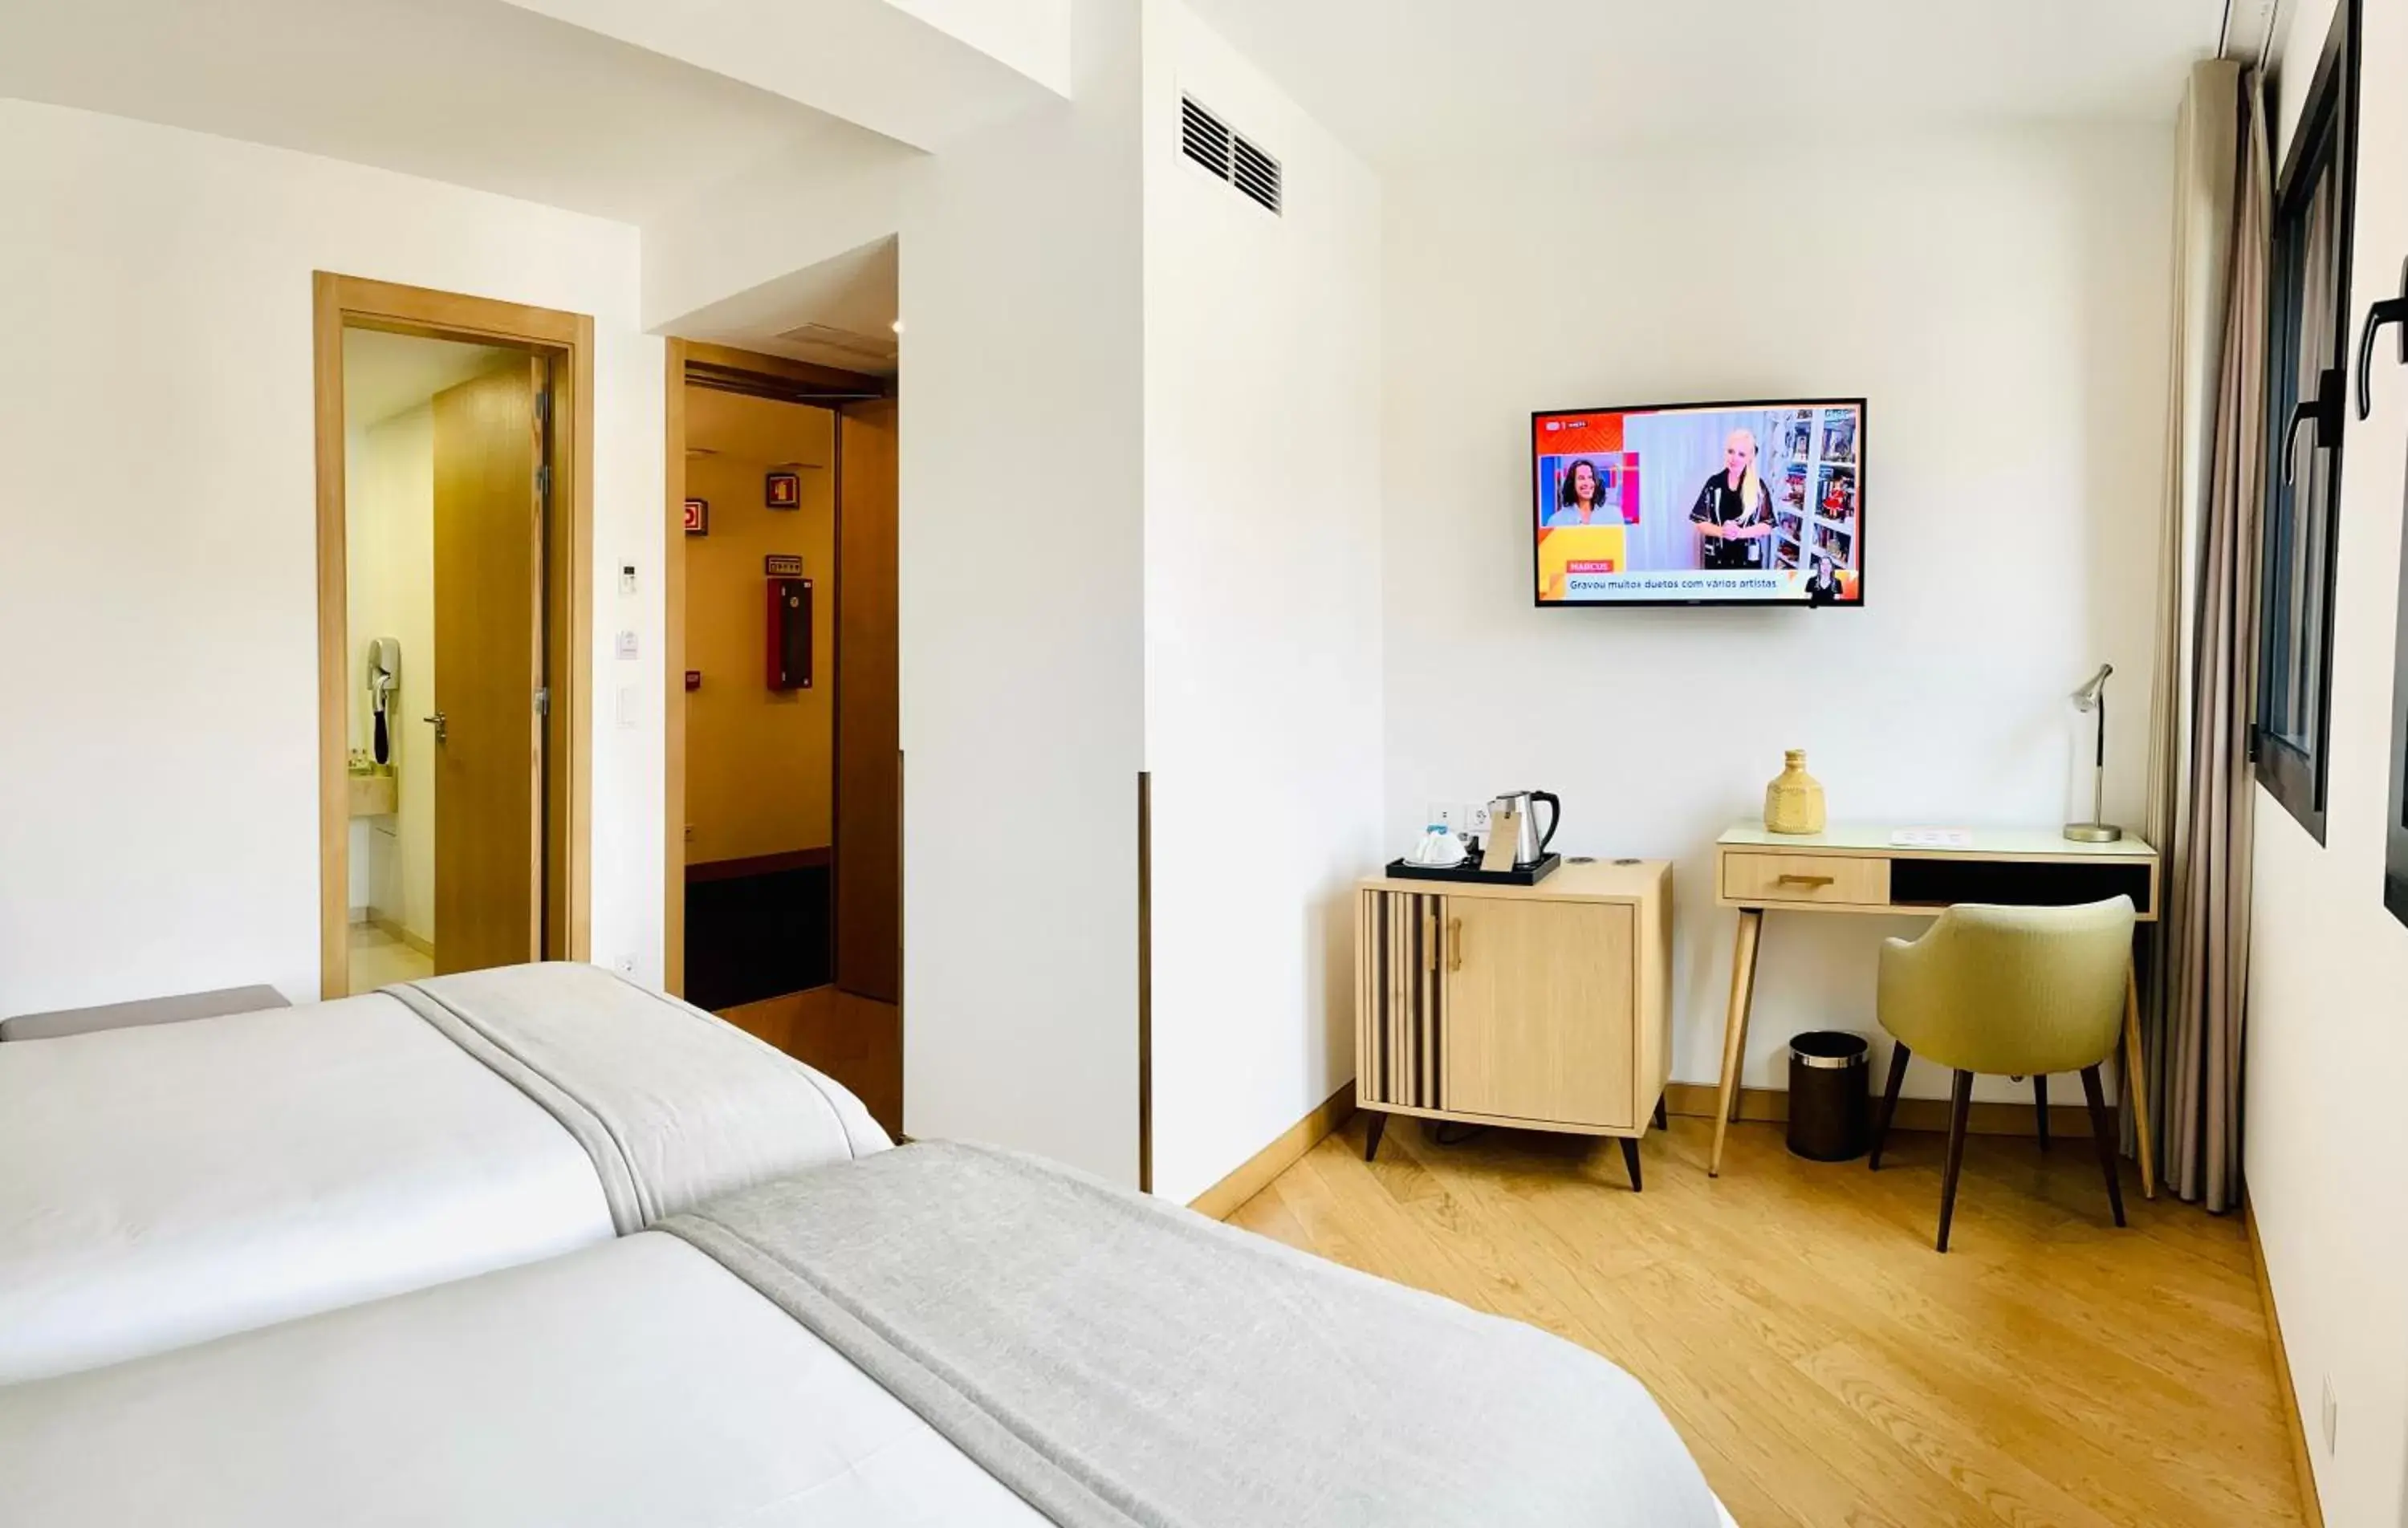 Bedroom, Bed in Castelo Hotel